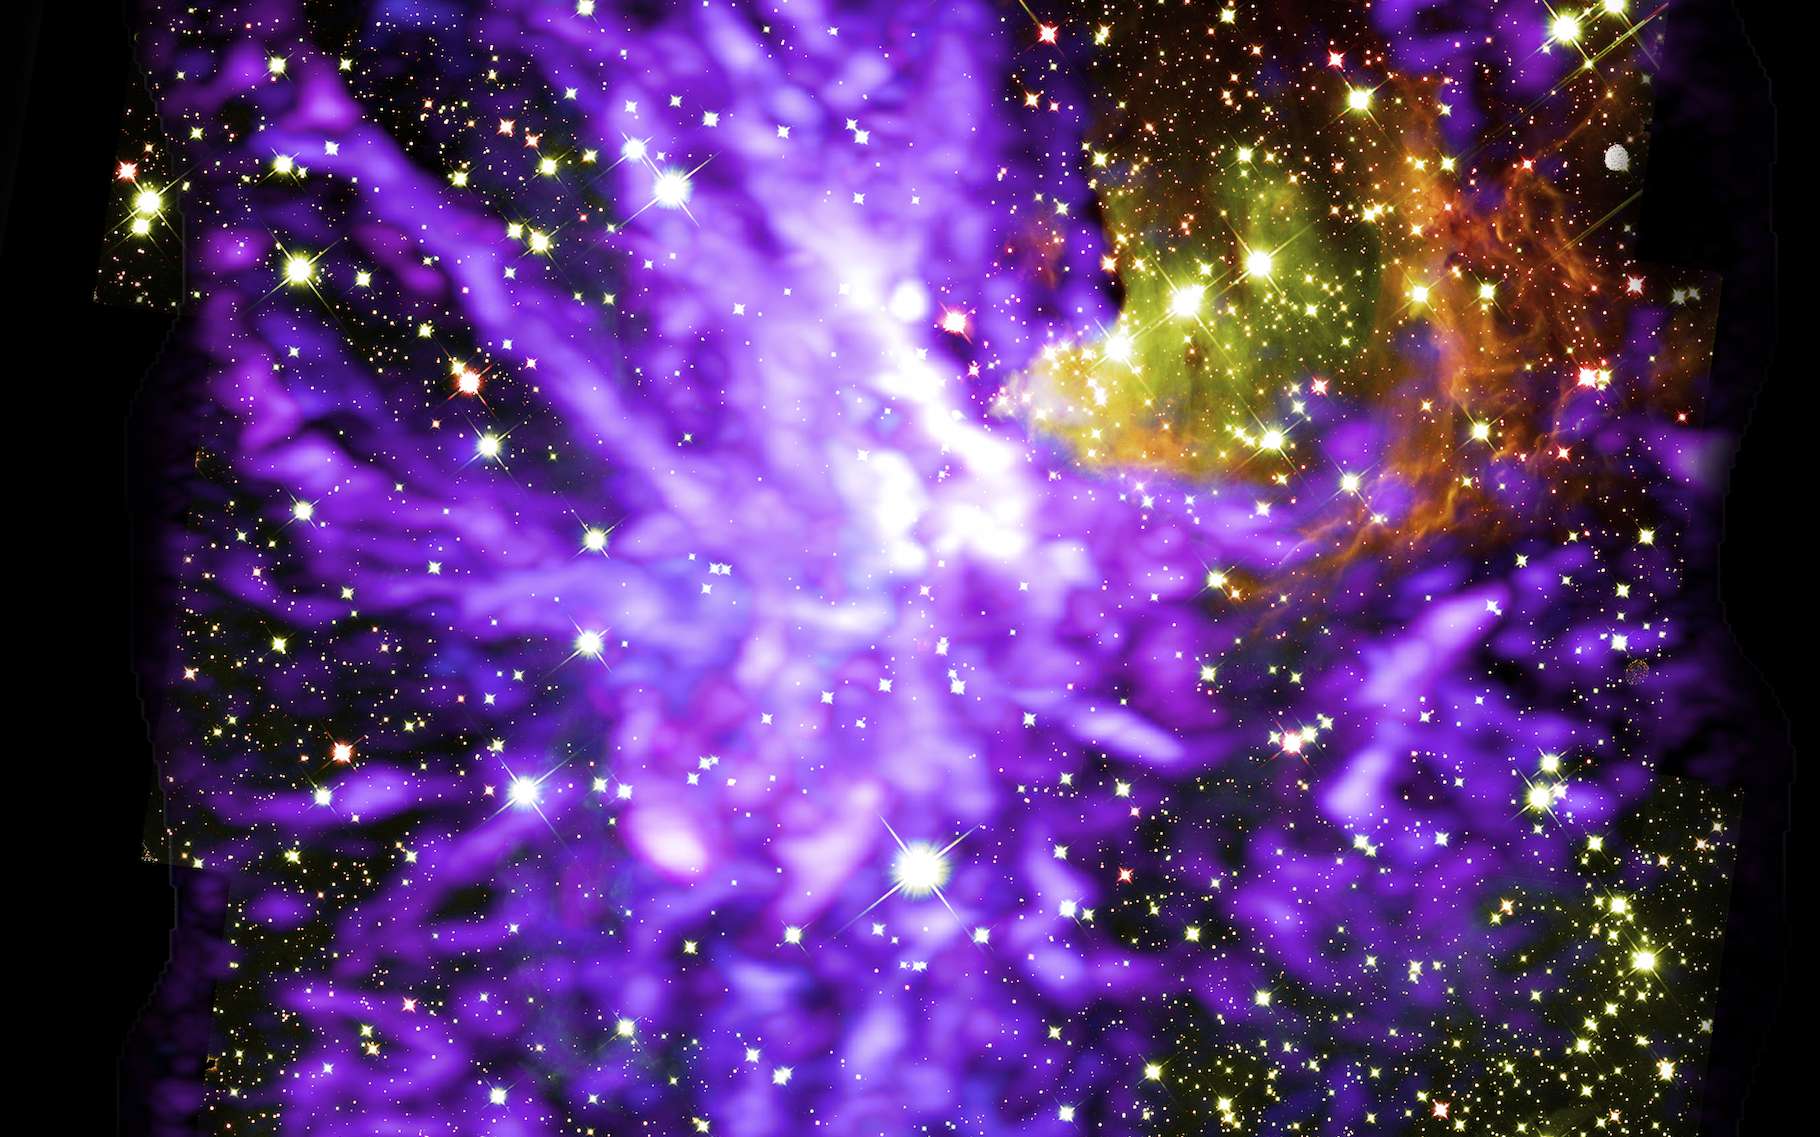 Magnifique : un feu d'artifice stellaire à 8.000 années-lumière de la Terre !